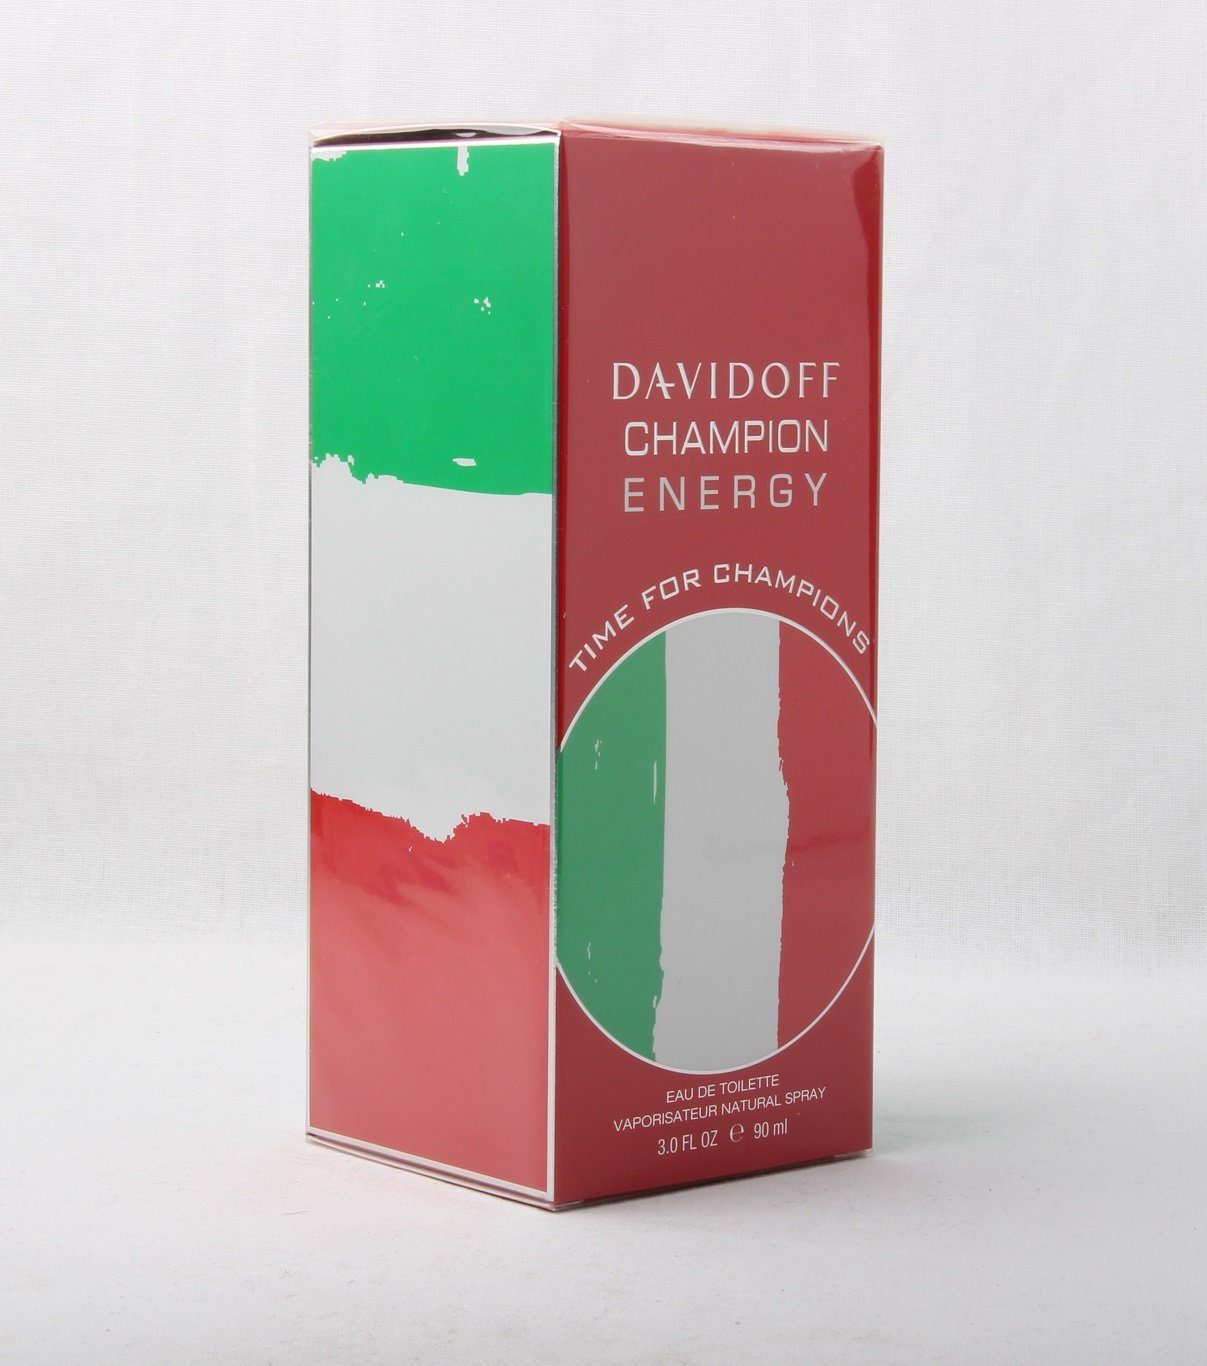 Davidoff eau 90ml spray Champion de Eau DAVIDOFF For Energy Time Toilette de Champions toilette